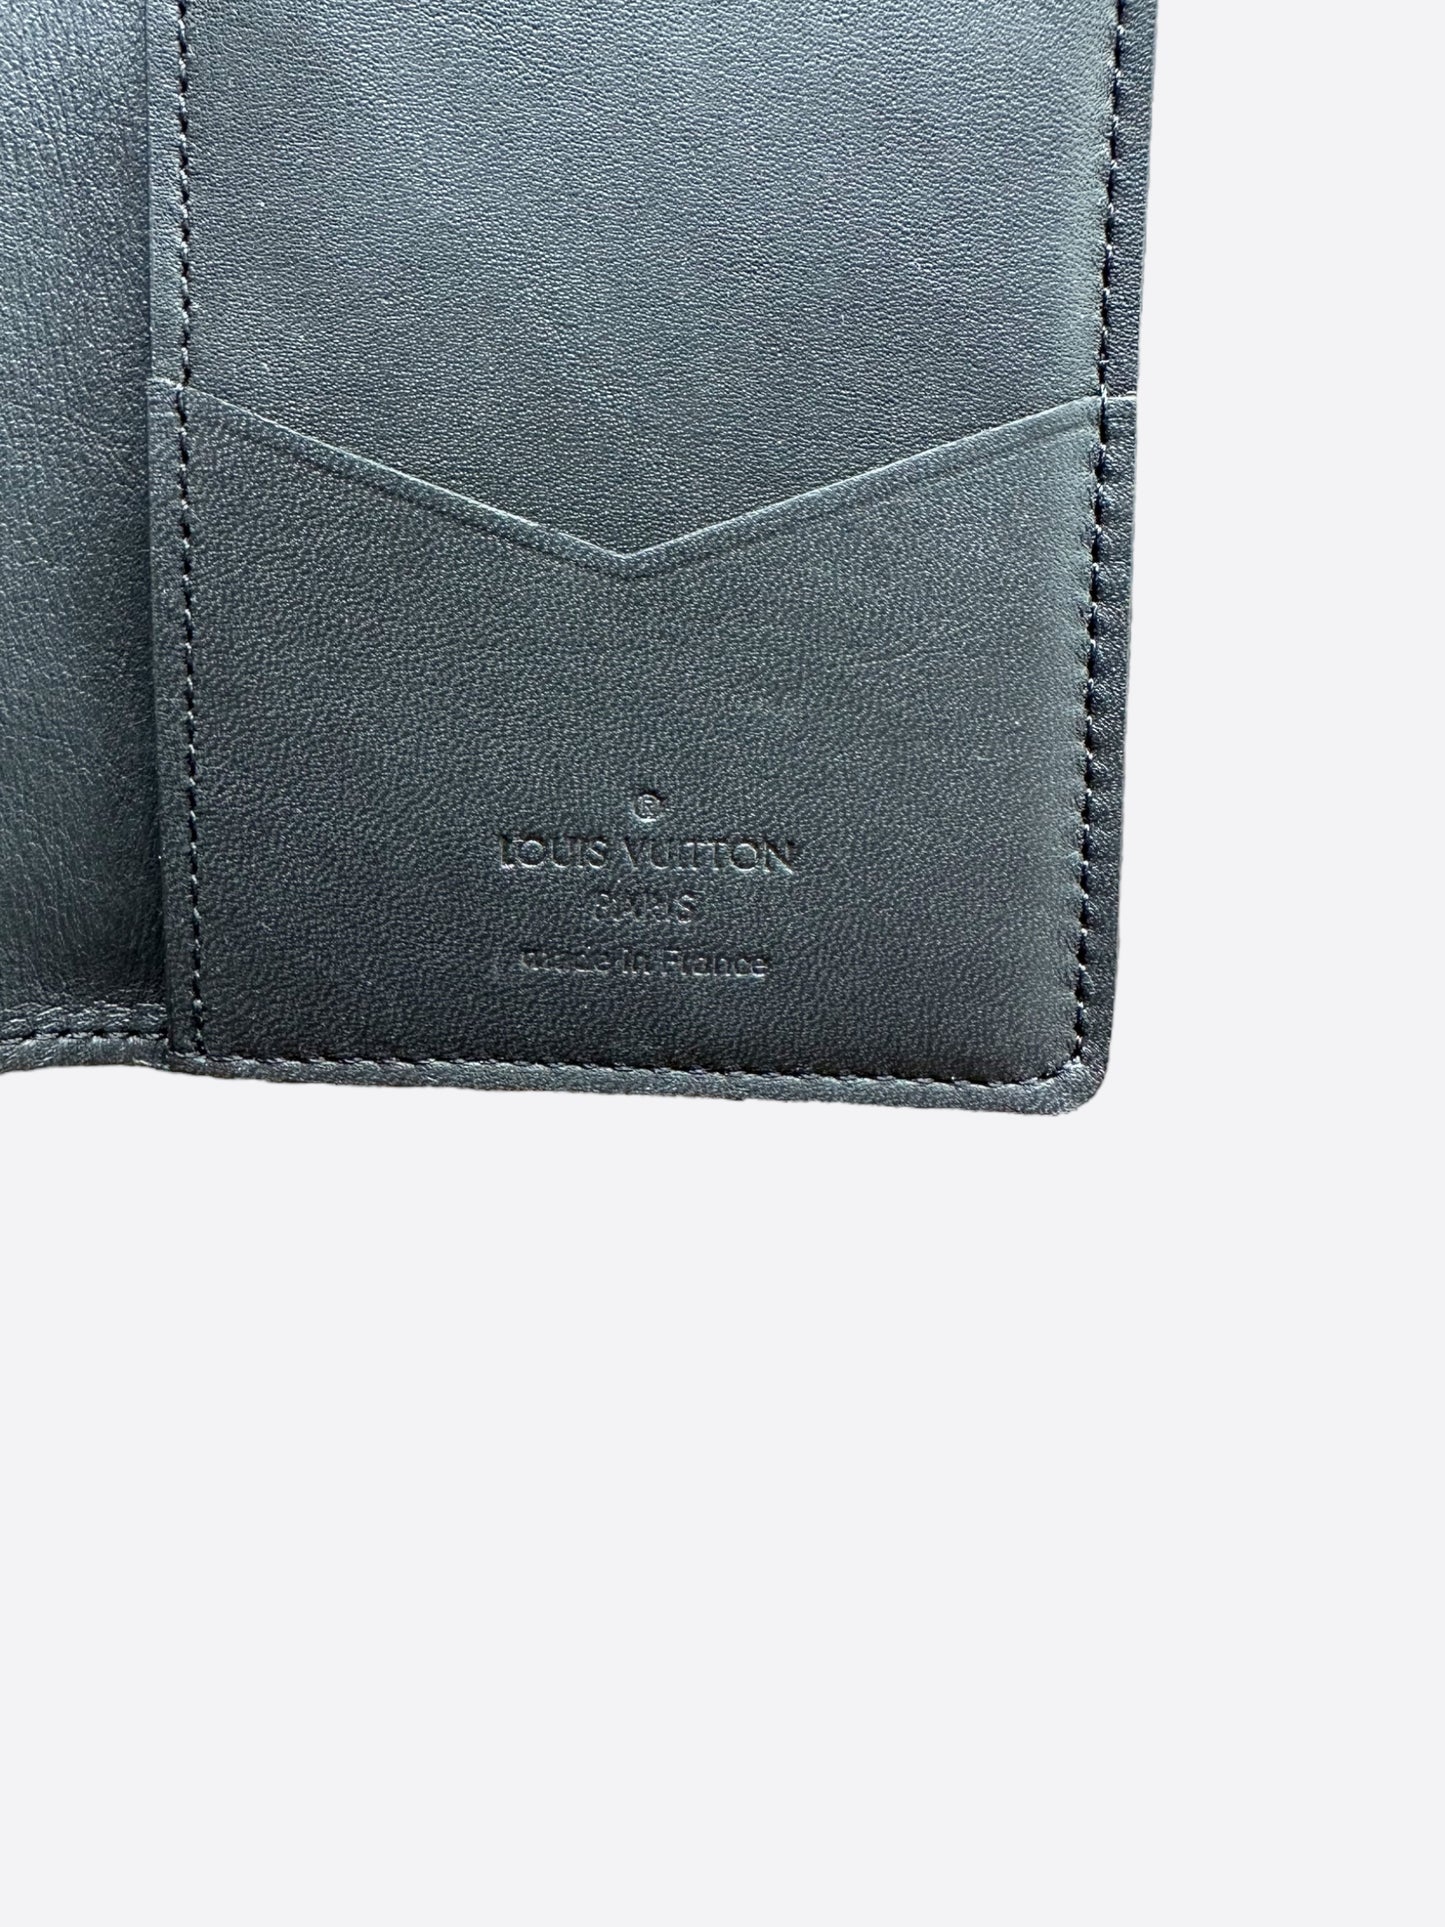 Louis Vuitton Friends Brown Monogram pocket Organizer – Savonches